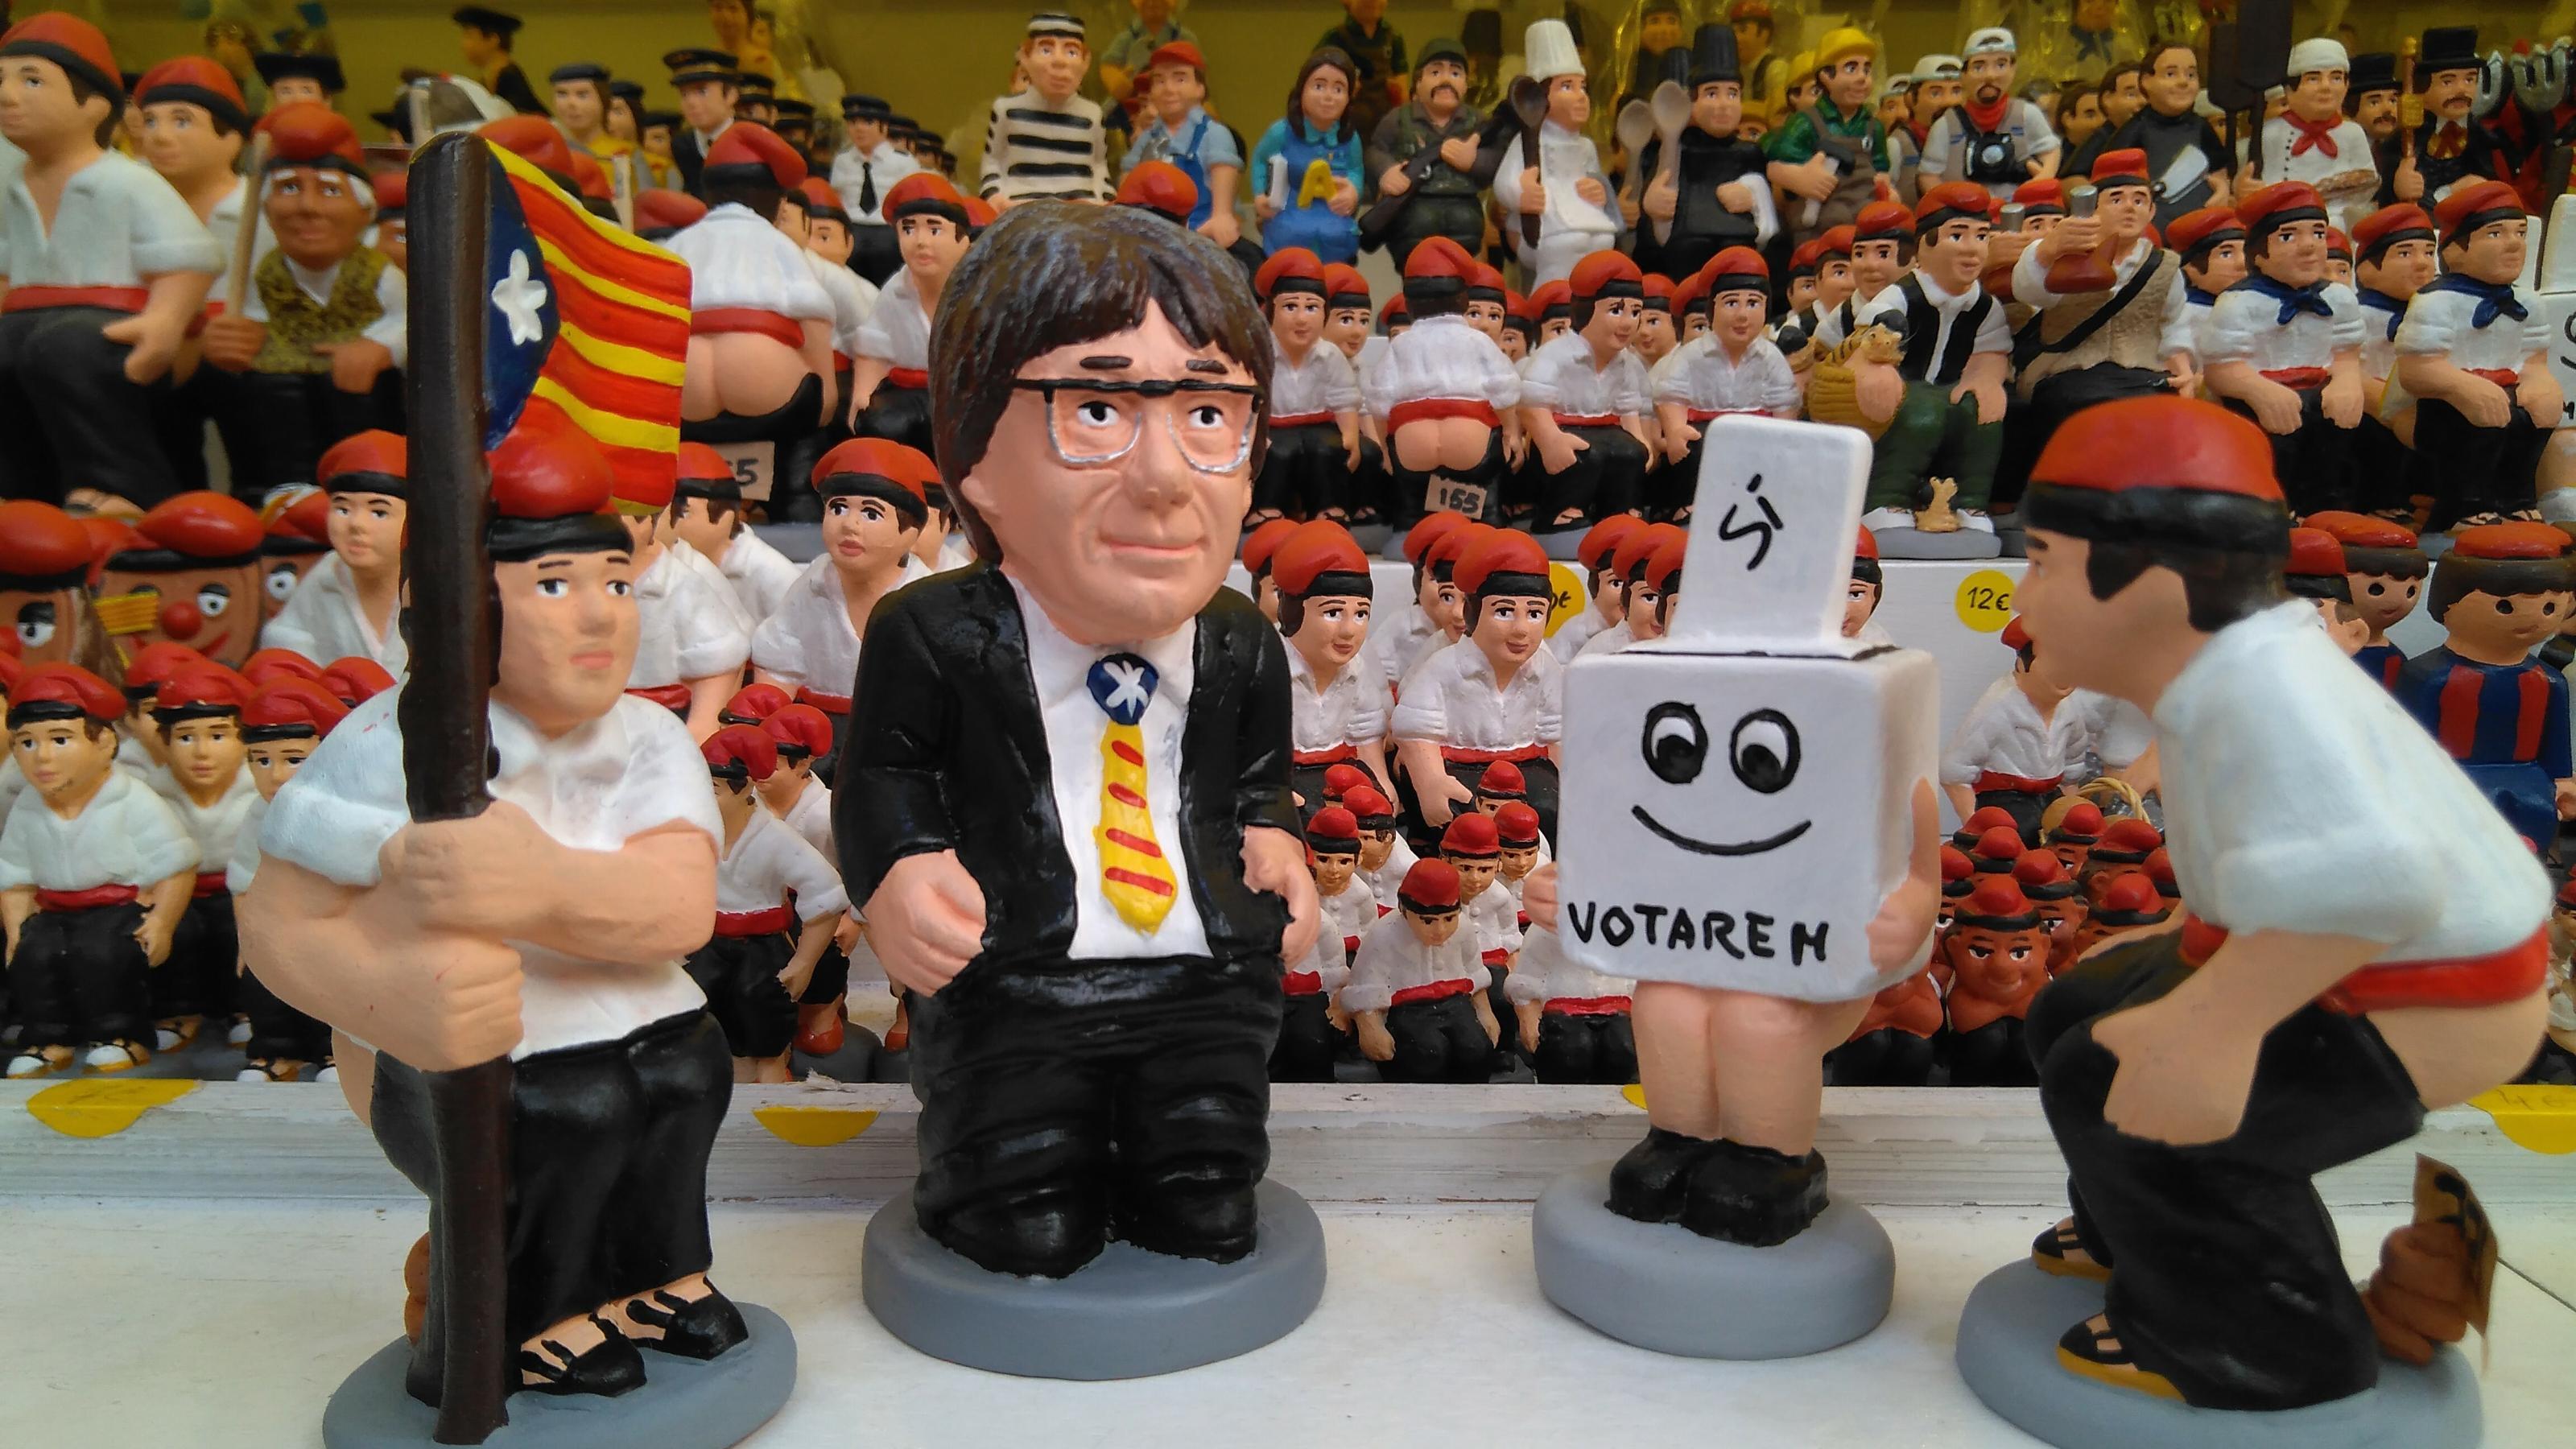 Katalanische Krippenfiguren mit der separatistischen „Estelada“, in Form von Wahlurnen und dem katalanischen Ex-Präsidenten Carles Puigdemont.